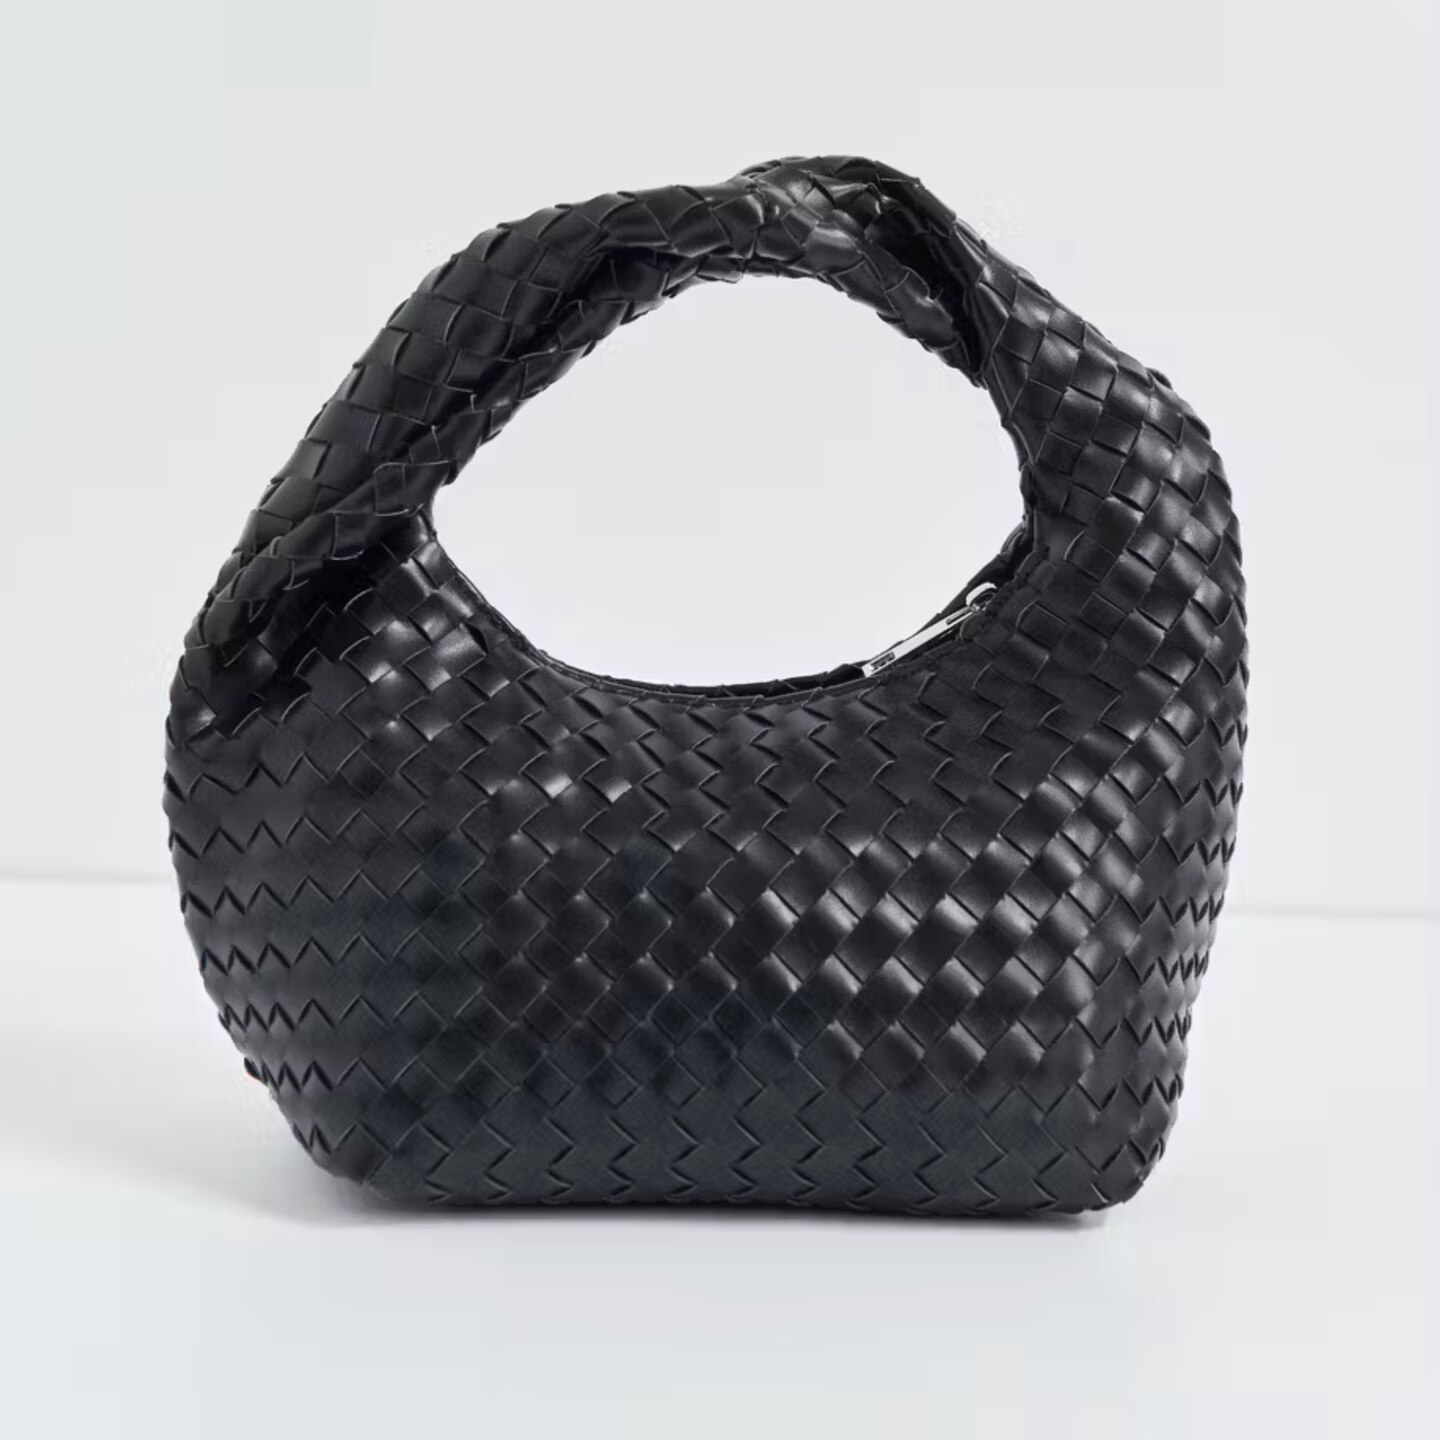 Geflochtene Taschen liegen im Trend und bei uns gerne in der Hand! Das schwarze Modell von Gina Tricot begeistert mit gedrehtem Griff und Reißverschluss. Für 40 Euro ist der Style geshoppt!